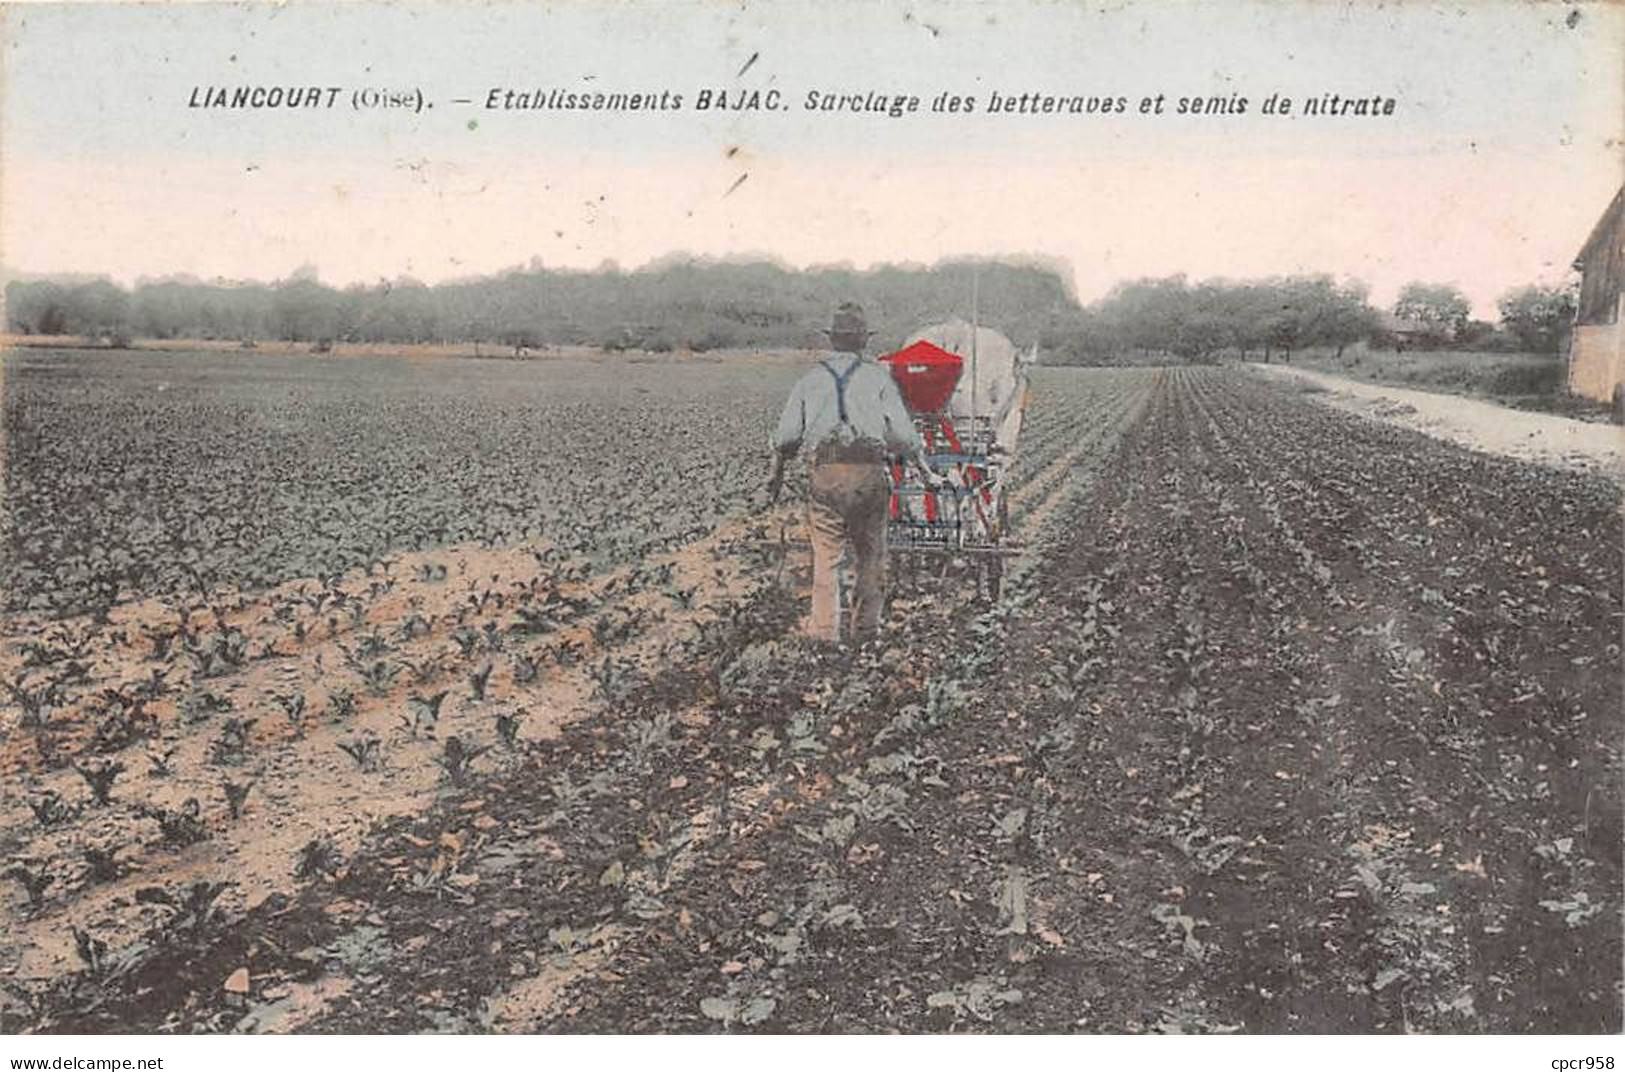 60 - LIANCOURT - SAN32282 - Etablissements BAJAC - Sarclage Des Betteraves Et Semis De Nitrate  - Agriculture - Liancourt